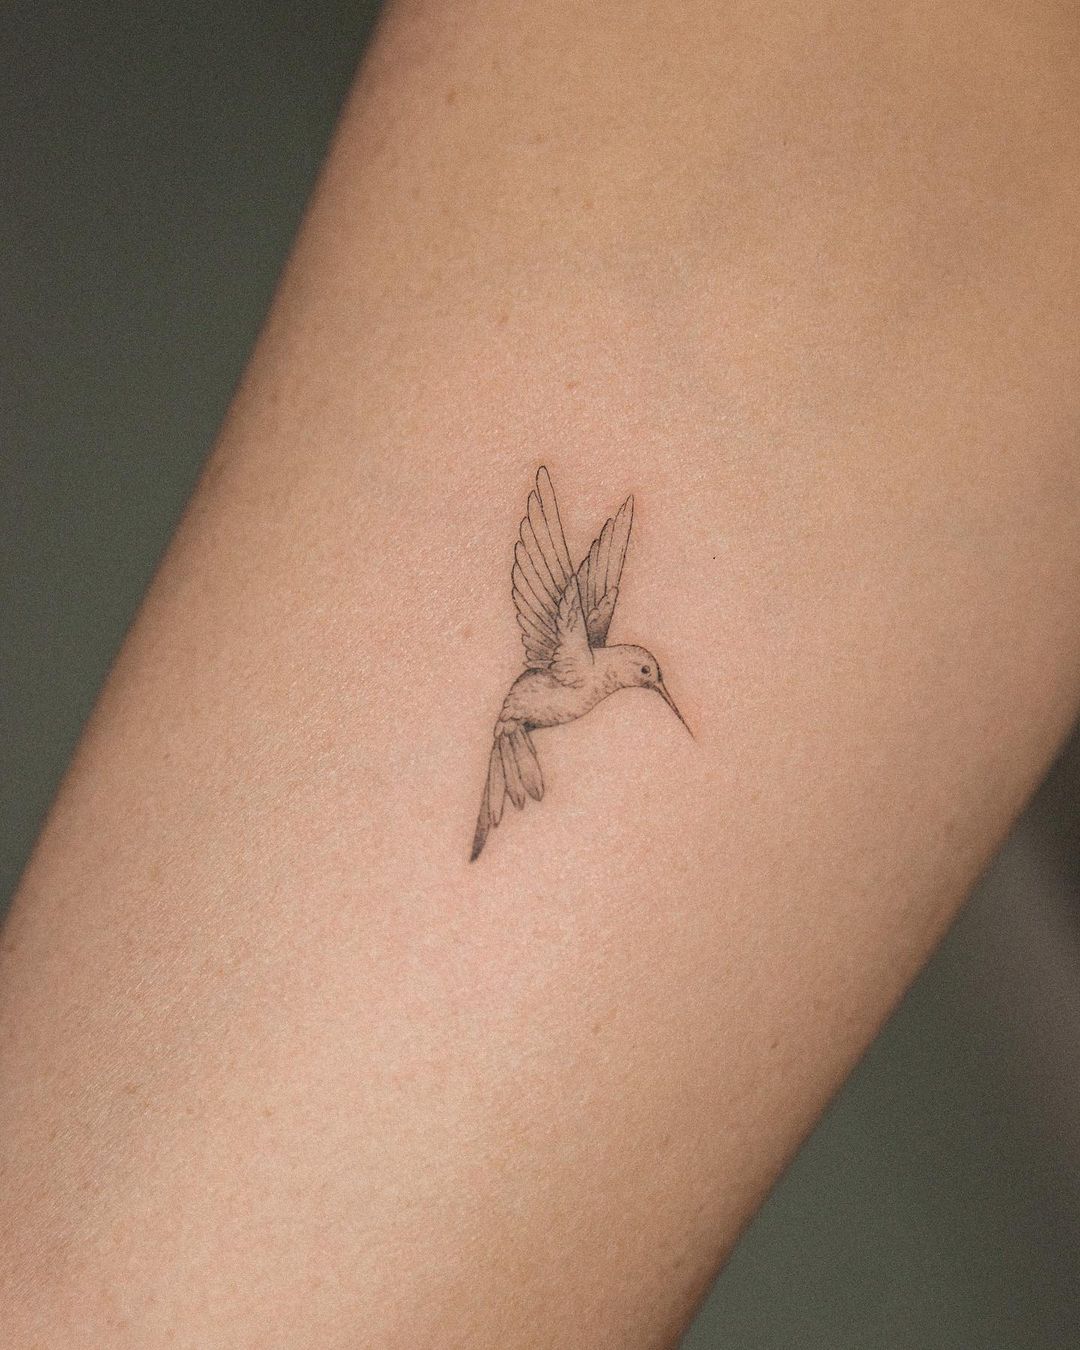 Humming bird tattoo by richi.tats